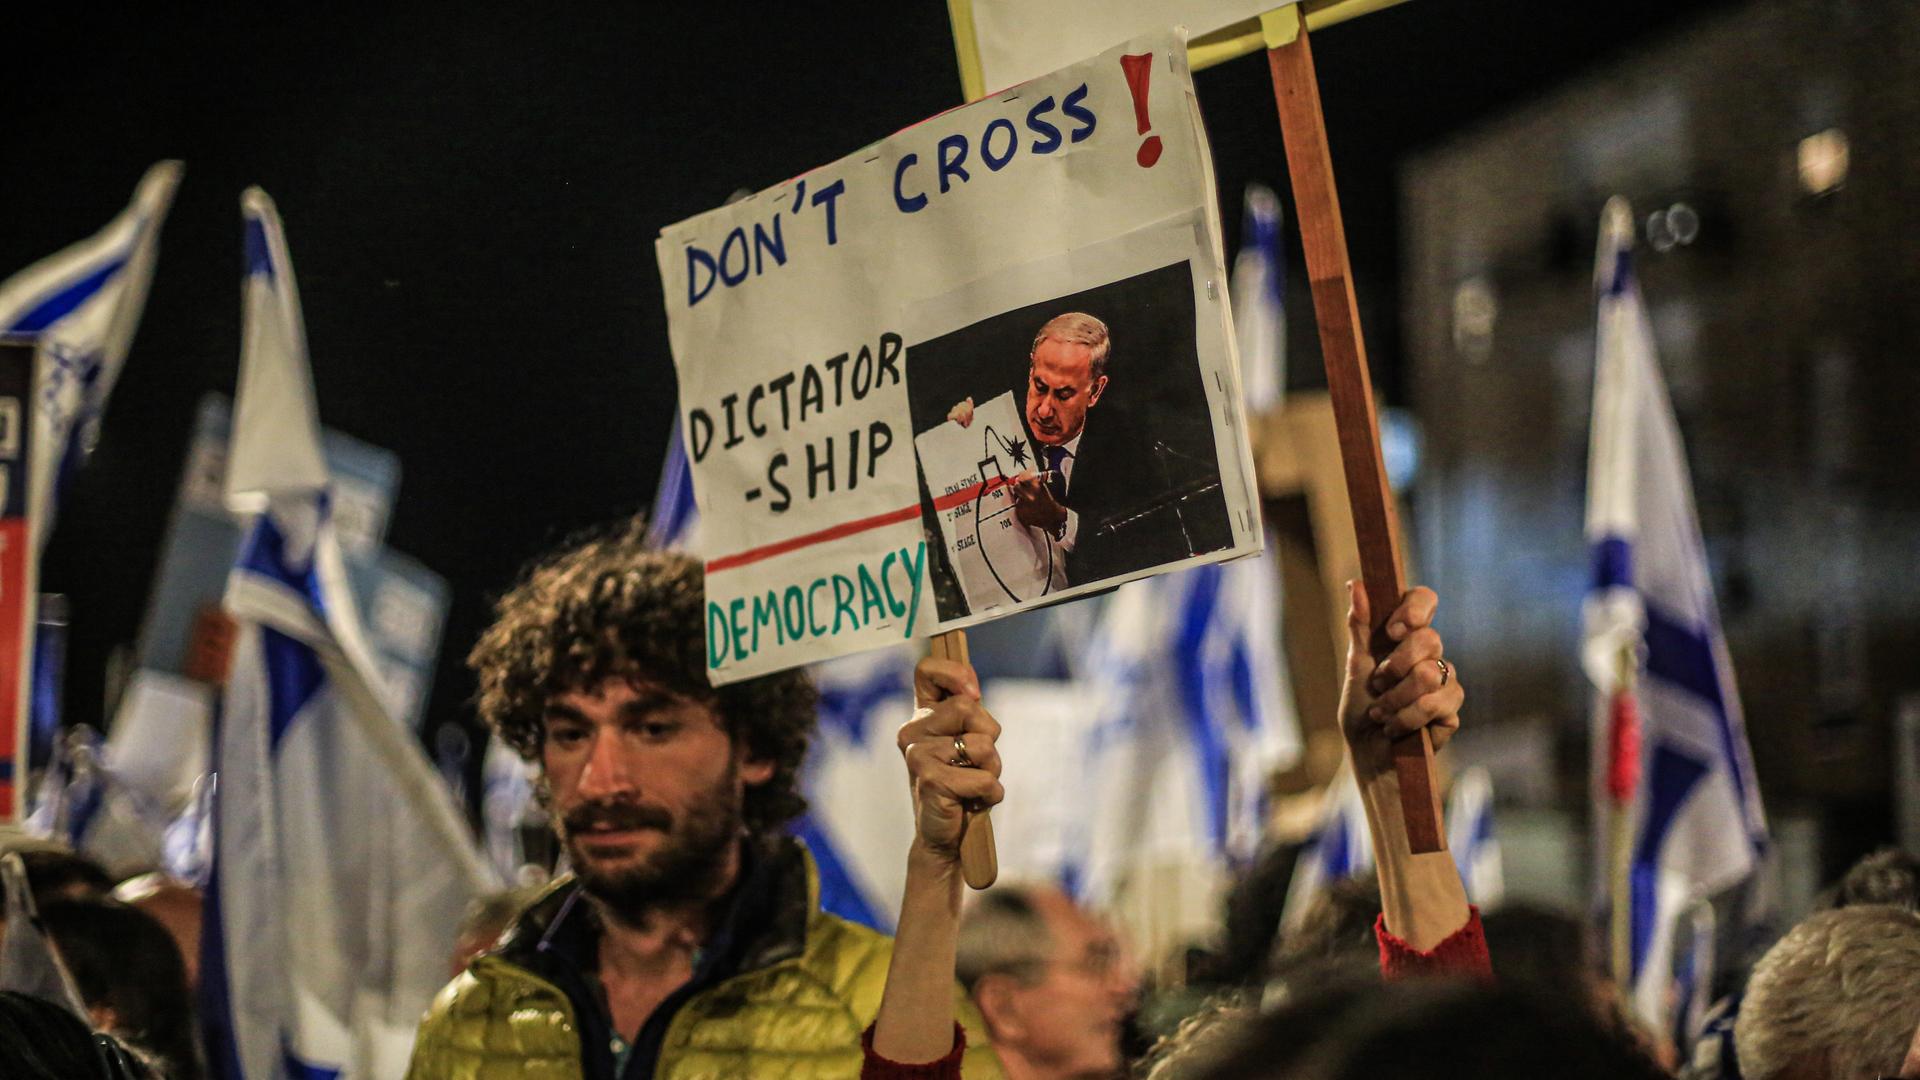 Ein Demonstrant beim Protest gegen die israelische Regierung in Jerusalem hält ein Schild hoch mit einem Bild von Präsident Benjamin Netanjahu und dem Satz: "Don't cross! Dicatorship - Democracy".